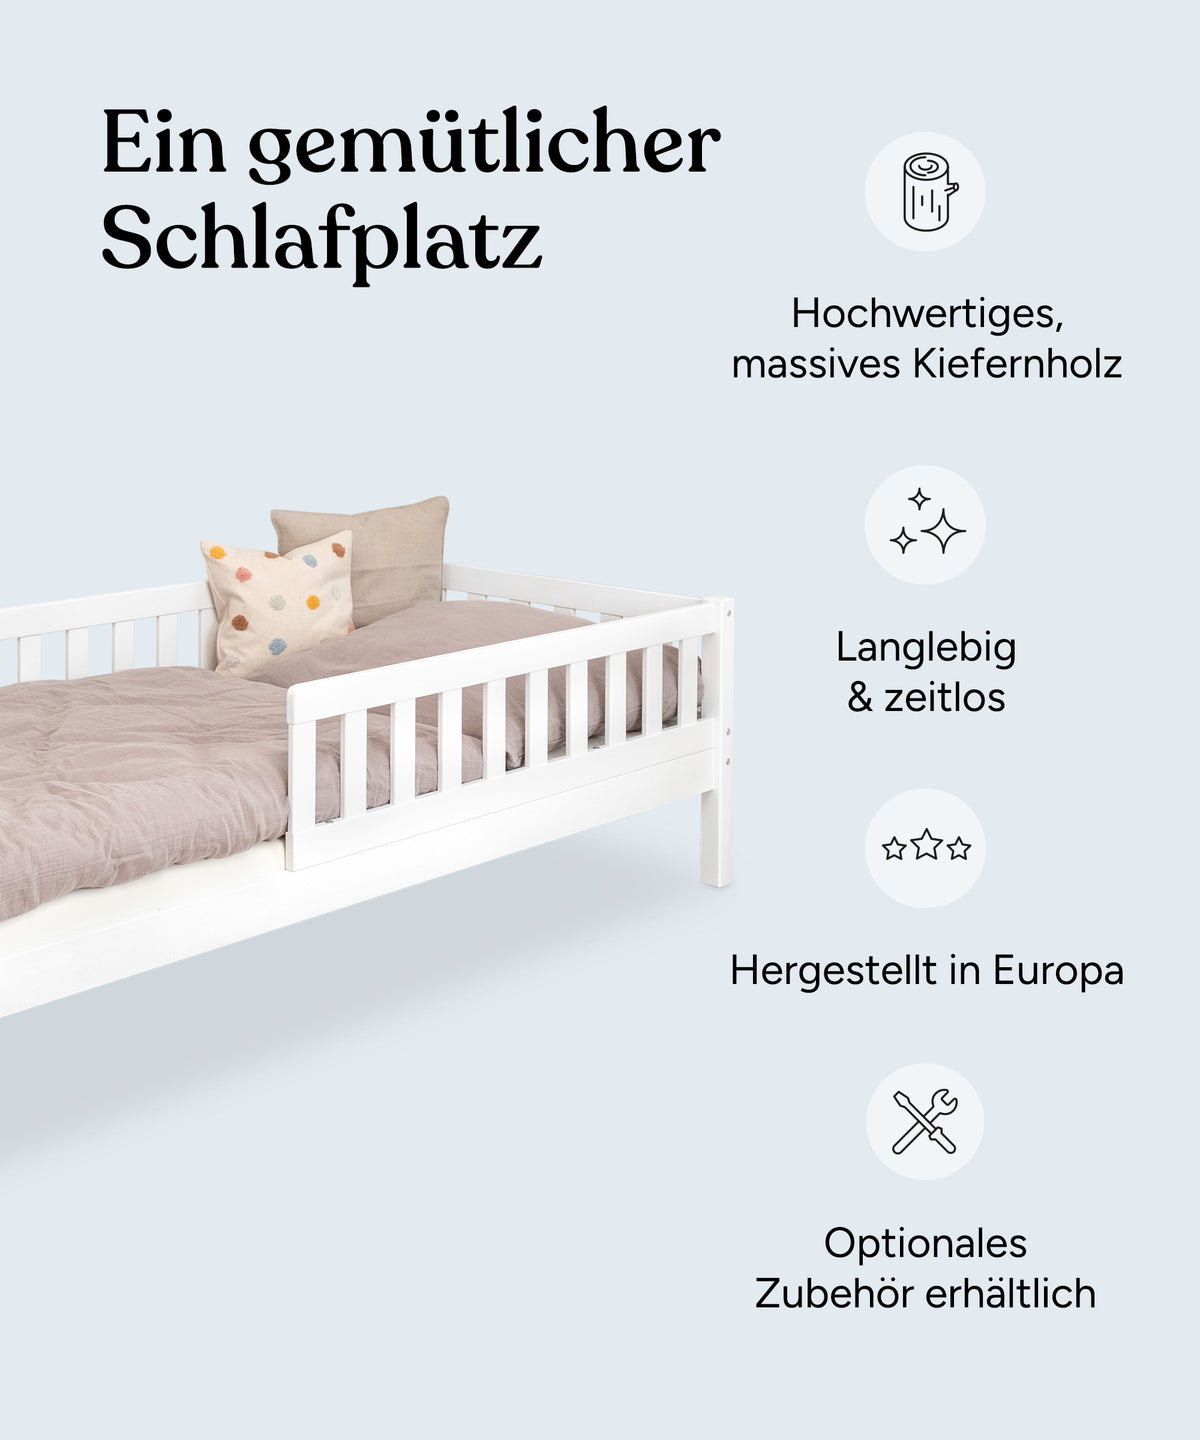 Vorteile Kinderbett Kiefer Weiß: Nachhaltiges Kiefernholz, langlebig und zeitlos, hergestellt in Europa, optionales Zubehör erhältlich.